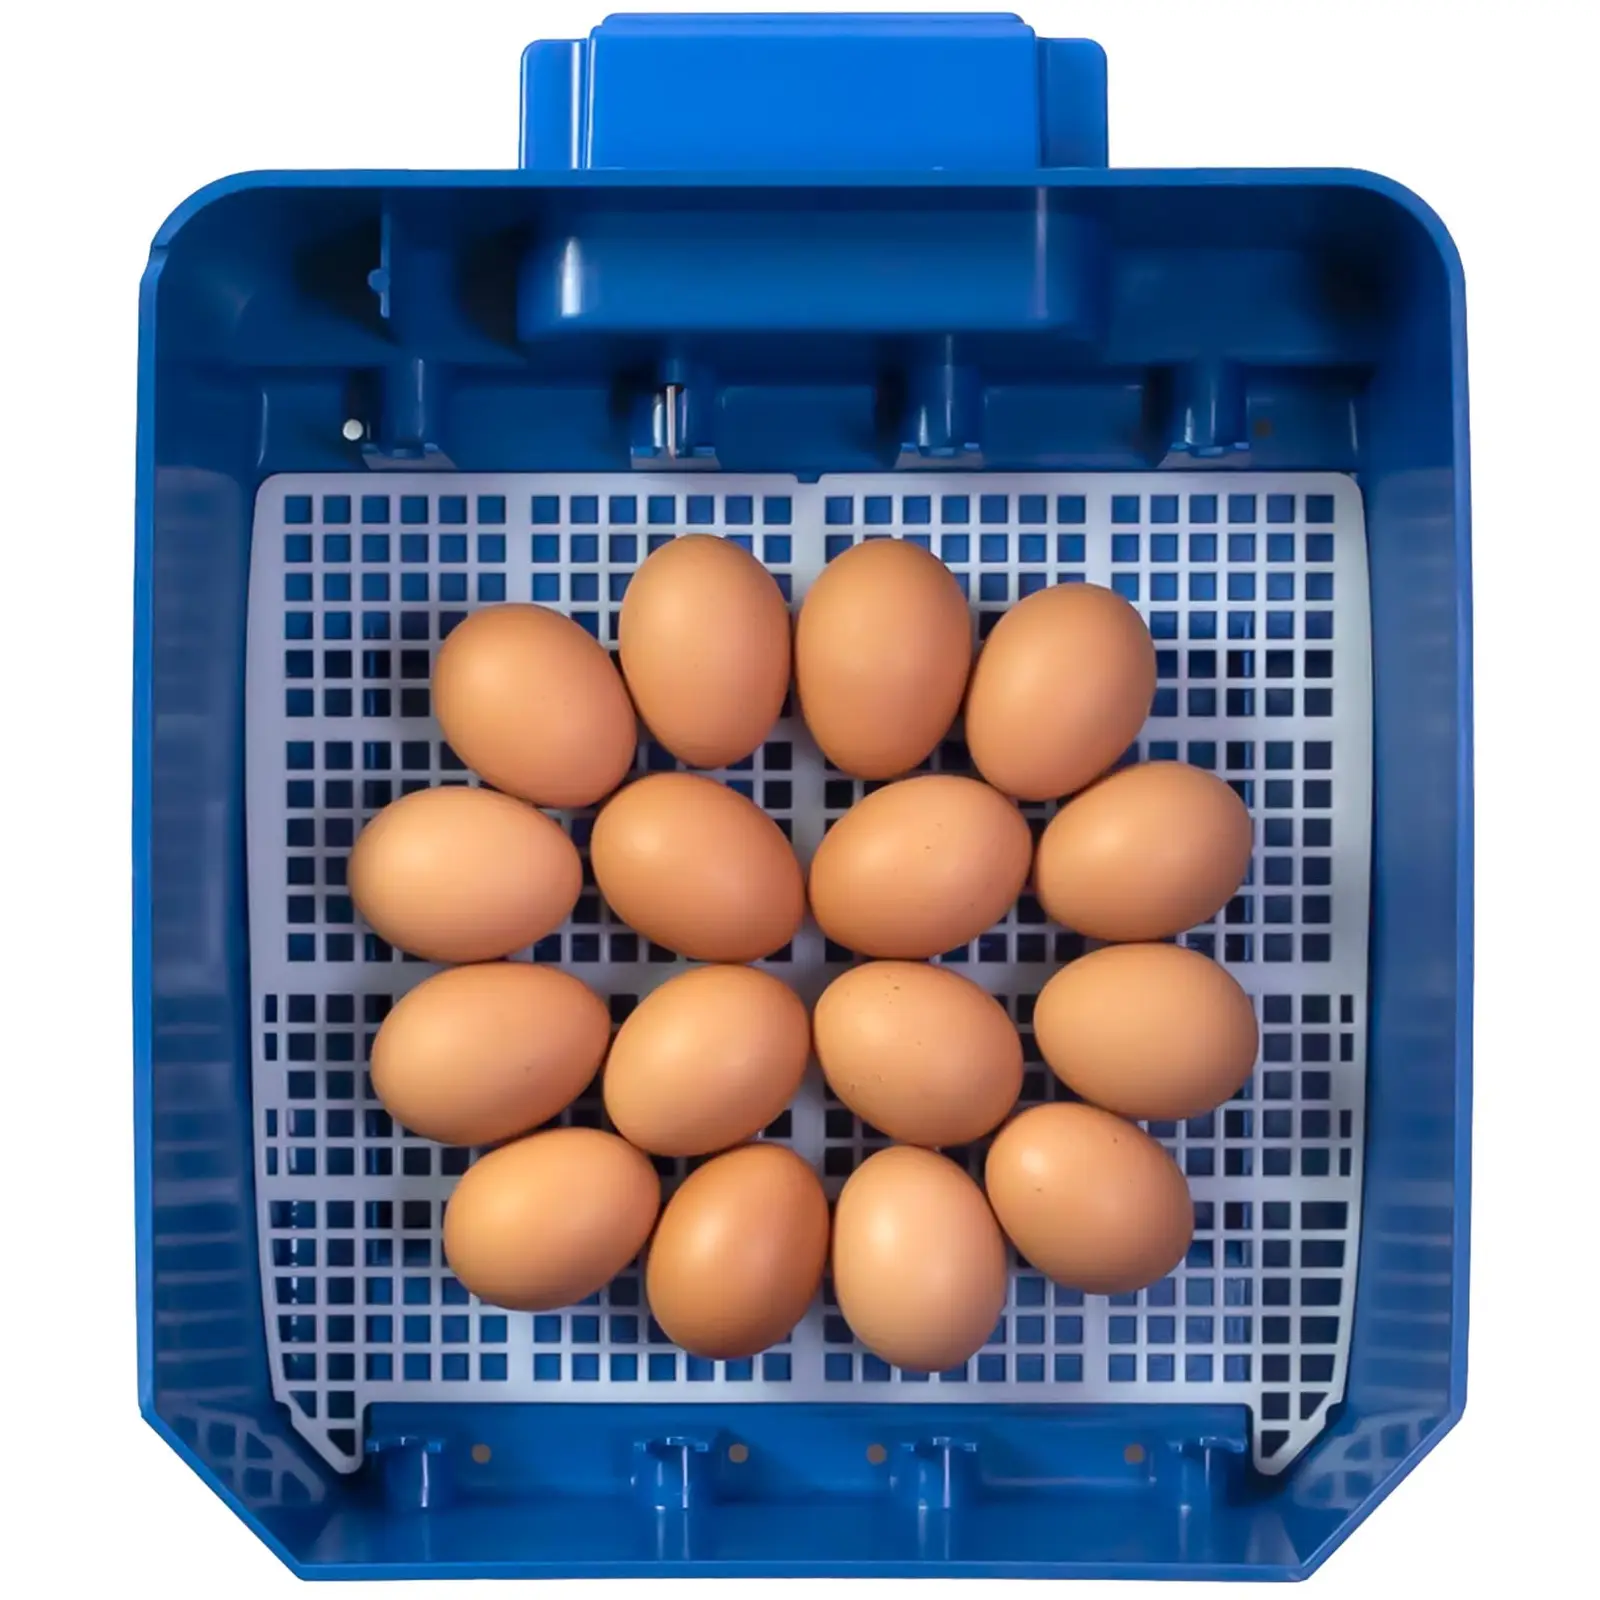 Umelá liaheň - 16 vajec - vrátane zvlhčovacieho systému - plná automatika - antimikrobiálna ochrana